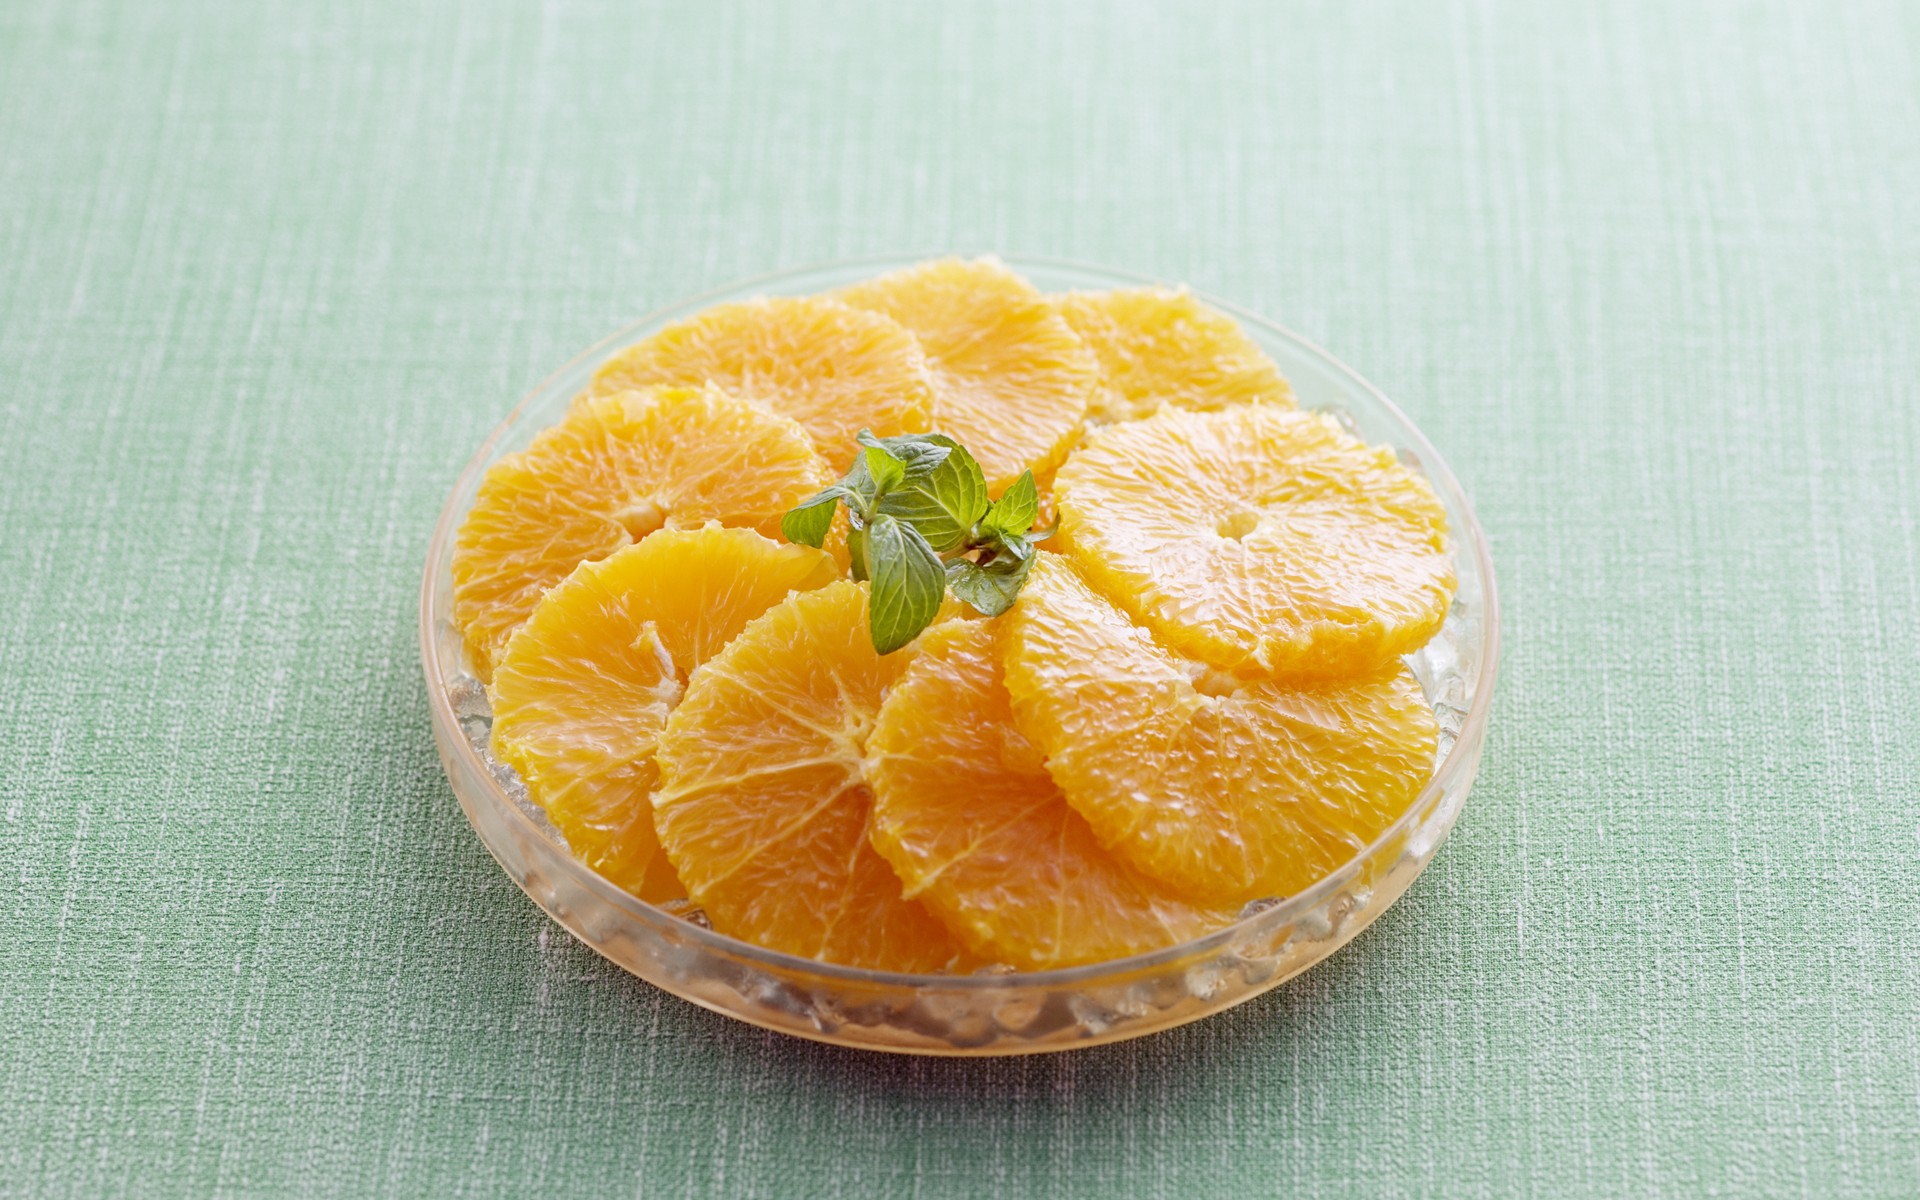 壁纸1920x1200 超漂亮水果甜品 橘子片图片壁纸 餐桌上的水果-水果甜点摄影(一)壁纸 餐桌上的水果-水果甜点摄影(一)图片 餐桌上的水果-水果甜点摄影(一)素材 摄影壁纸 摄影图库 摄影图片素材桌面壁纸